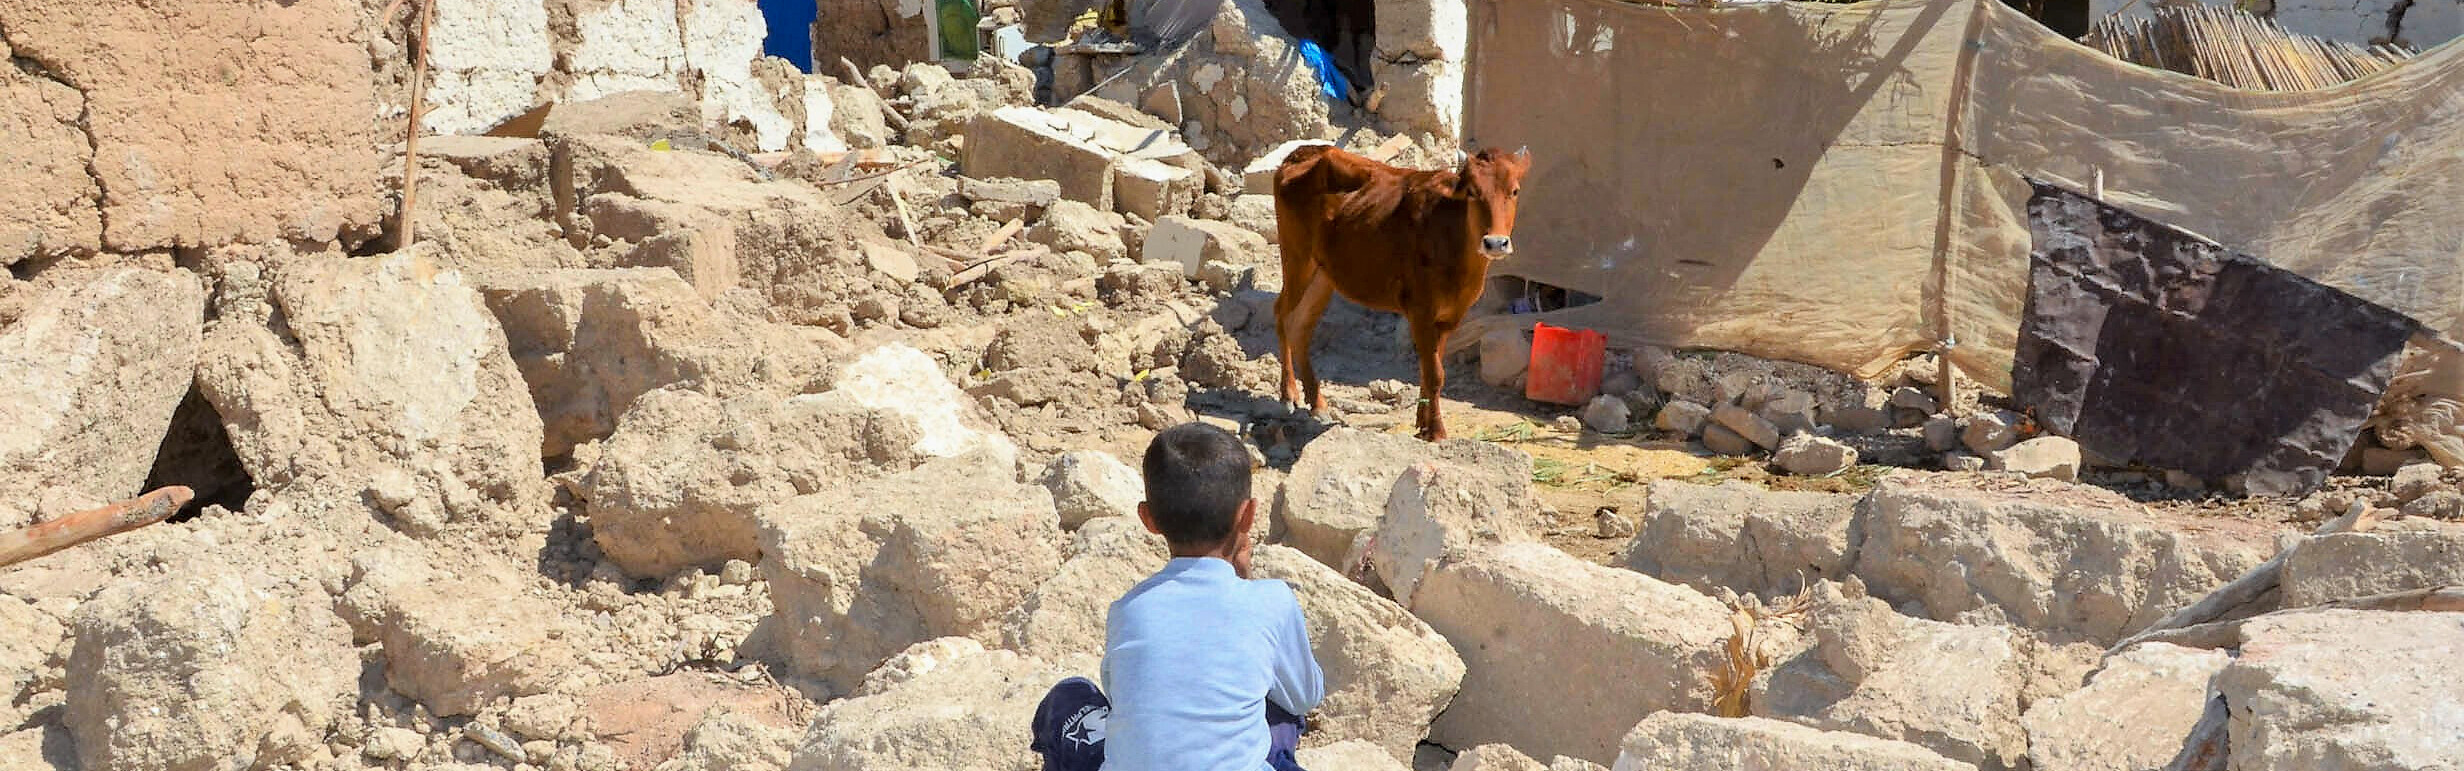 Ein Junge hockt nach dem Erdbeben in Marokko zwischen Trümmern zerstörter Häuser